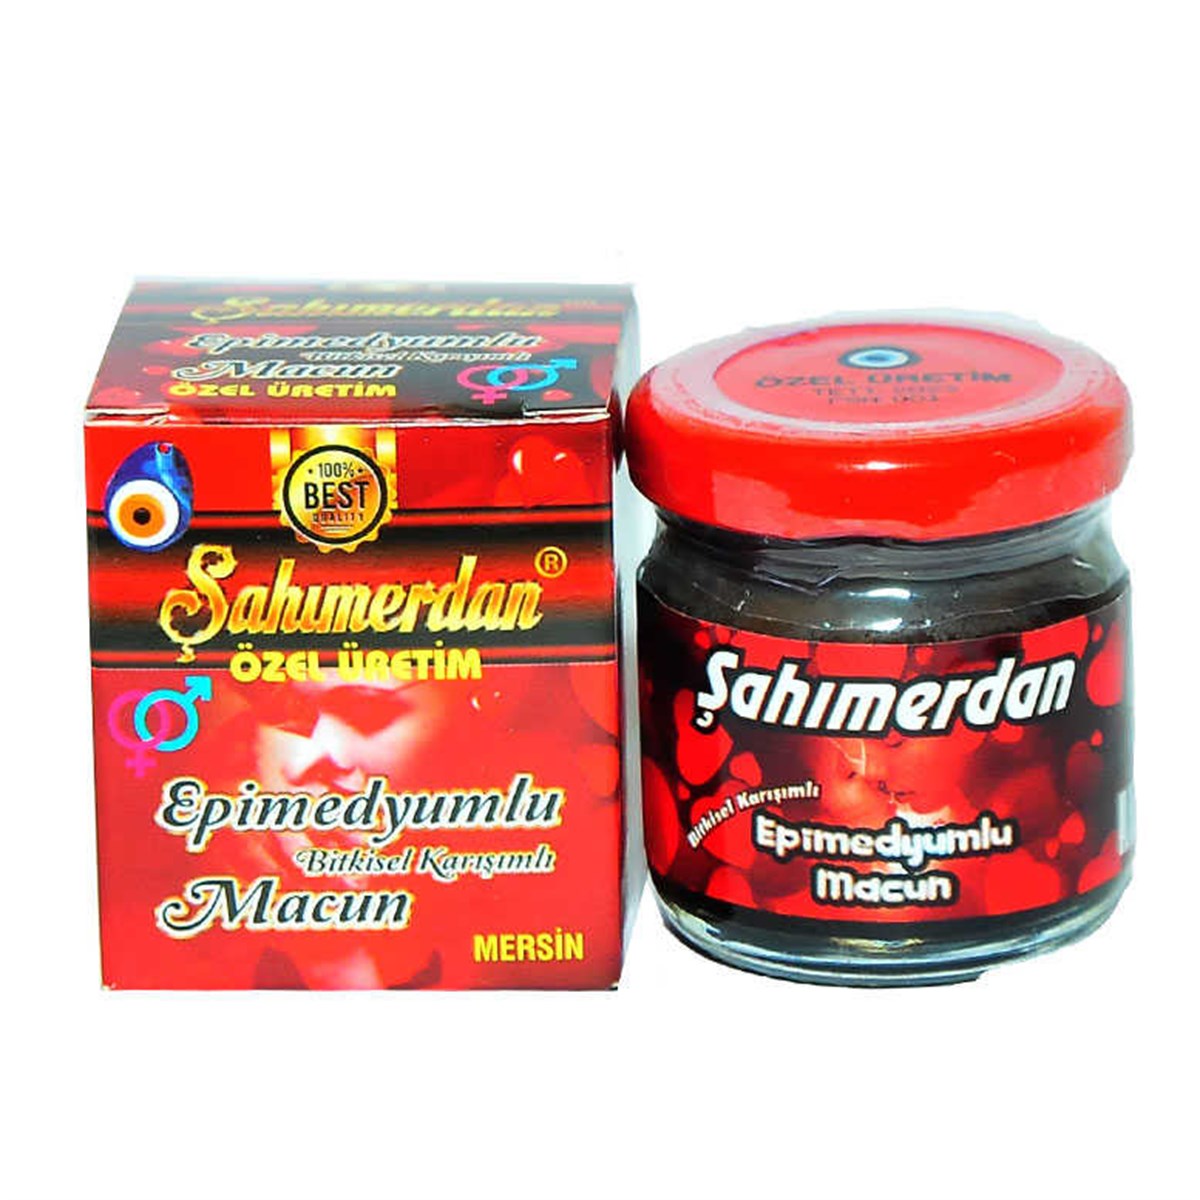 Shahmerdan Epimedium Majun – 240 g. (Aphrodisiac)